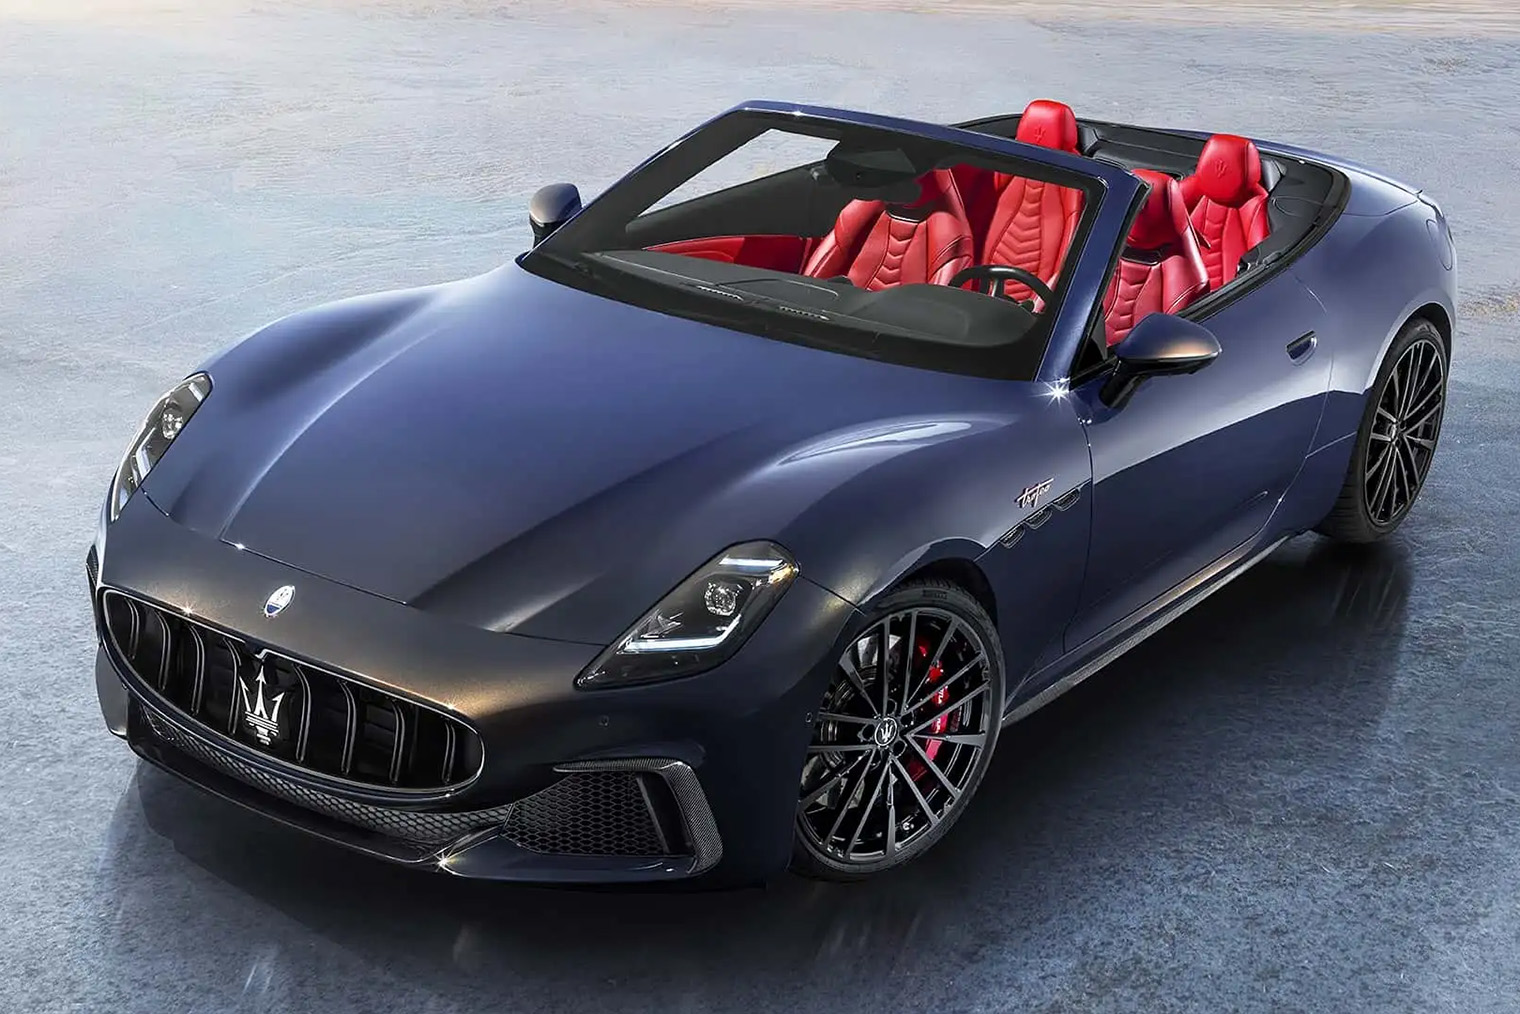 У новой Maserati колесные диски разного диаметра: передние — 20 дюймов, задние — 21 дюйм. Источник: motor1.com